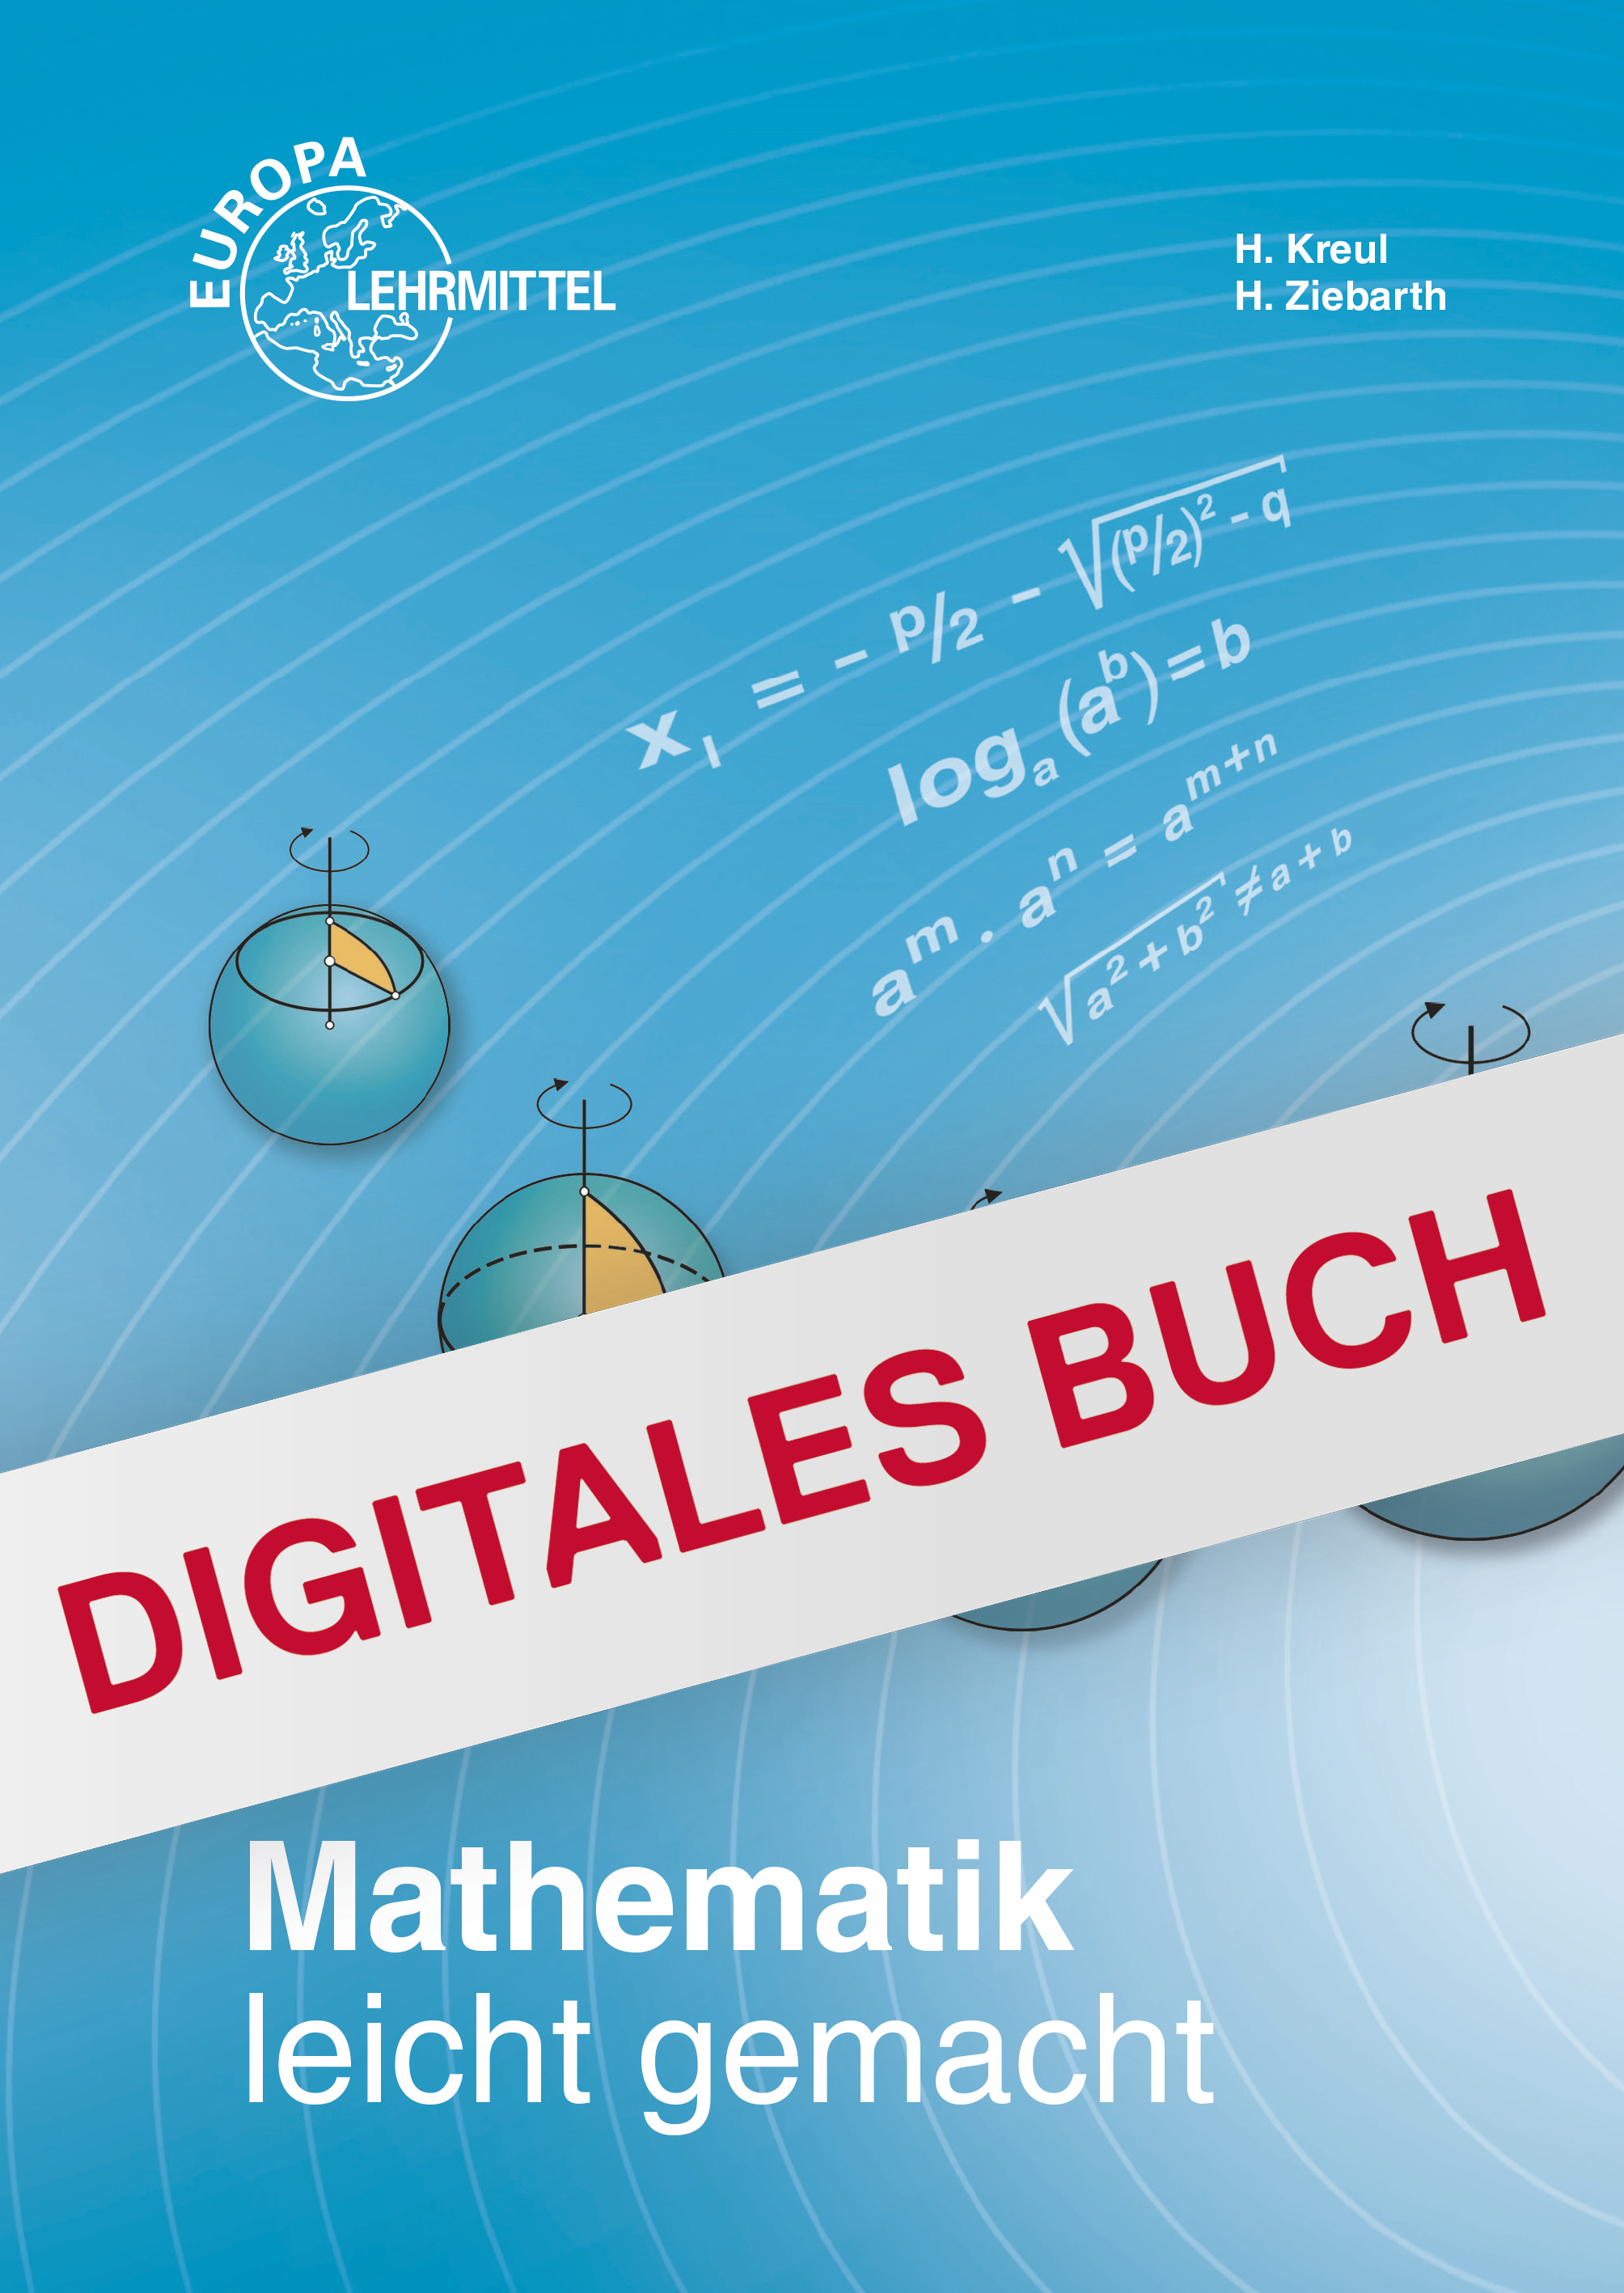 Mathematik leicht gemacht - Digitales Buch